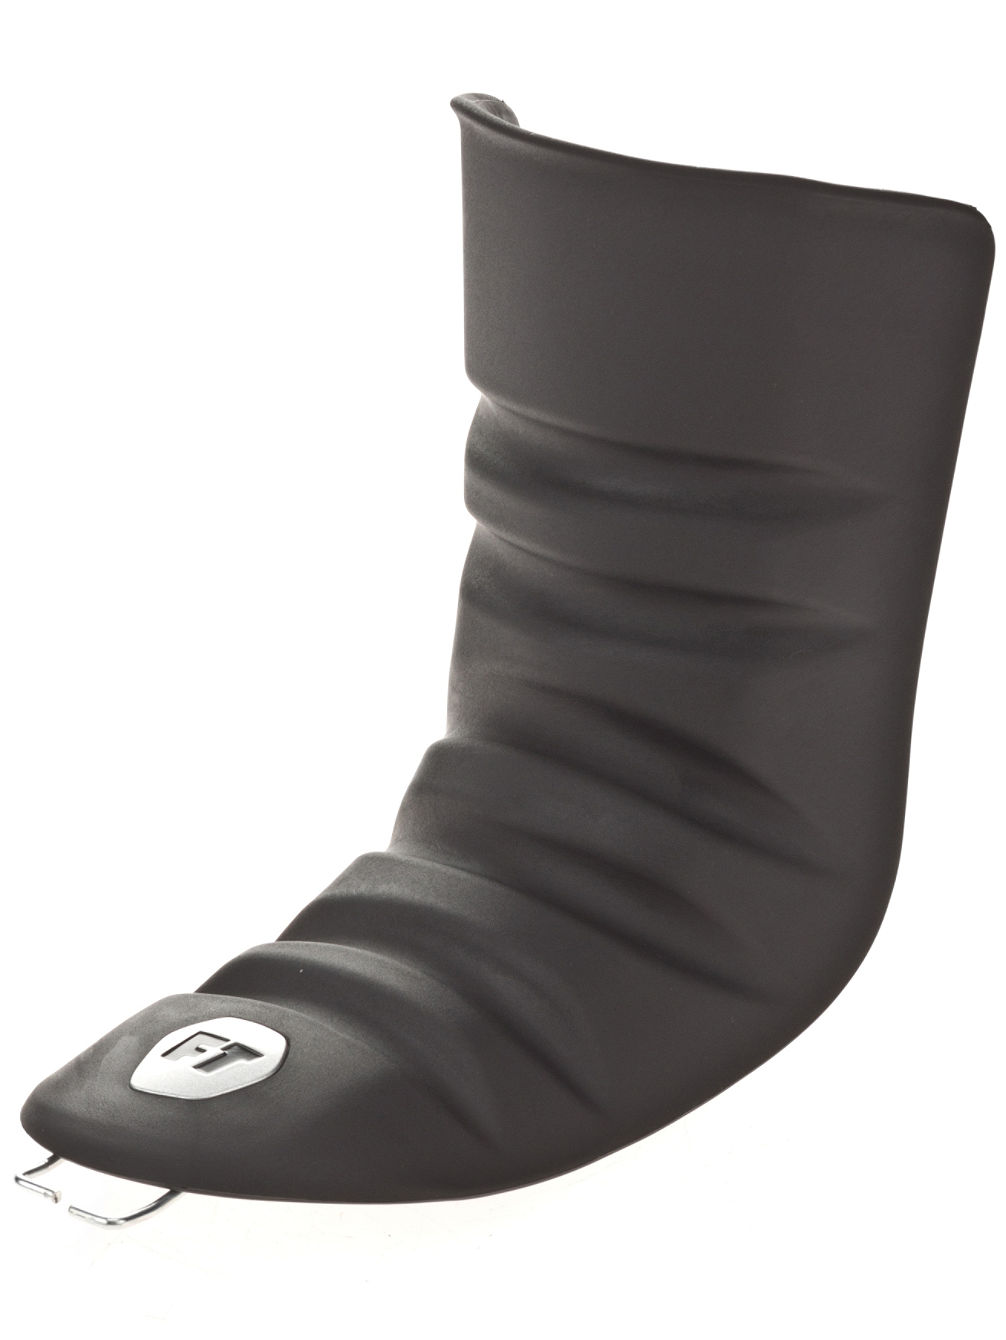 FTE Languette Flex 10 2022 Ski Boots